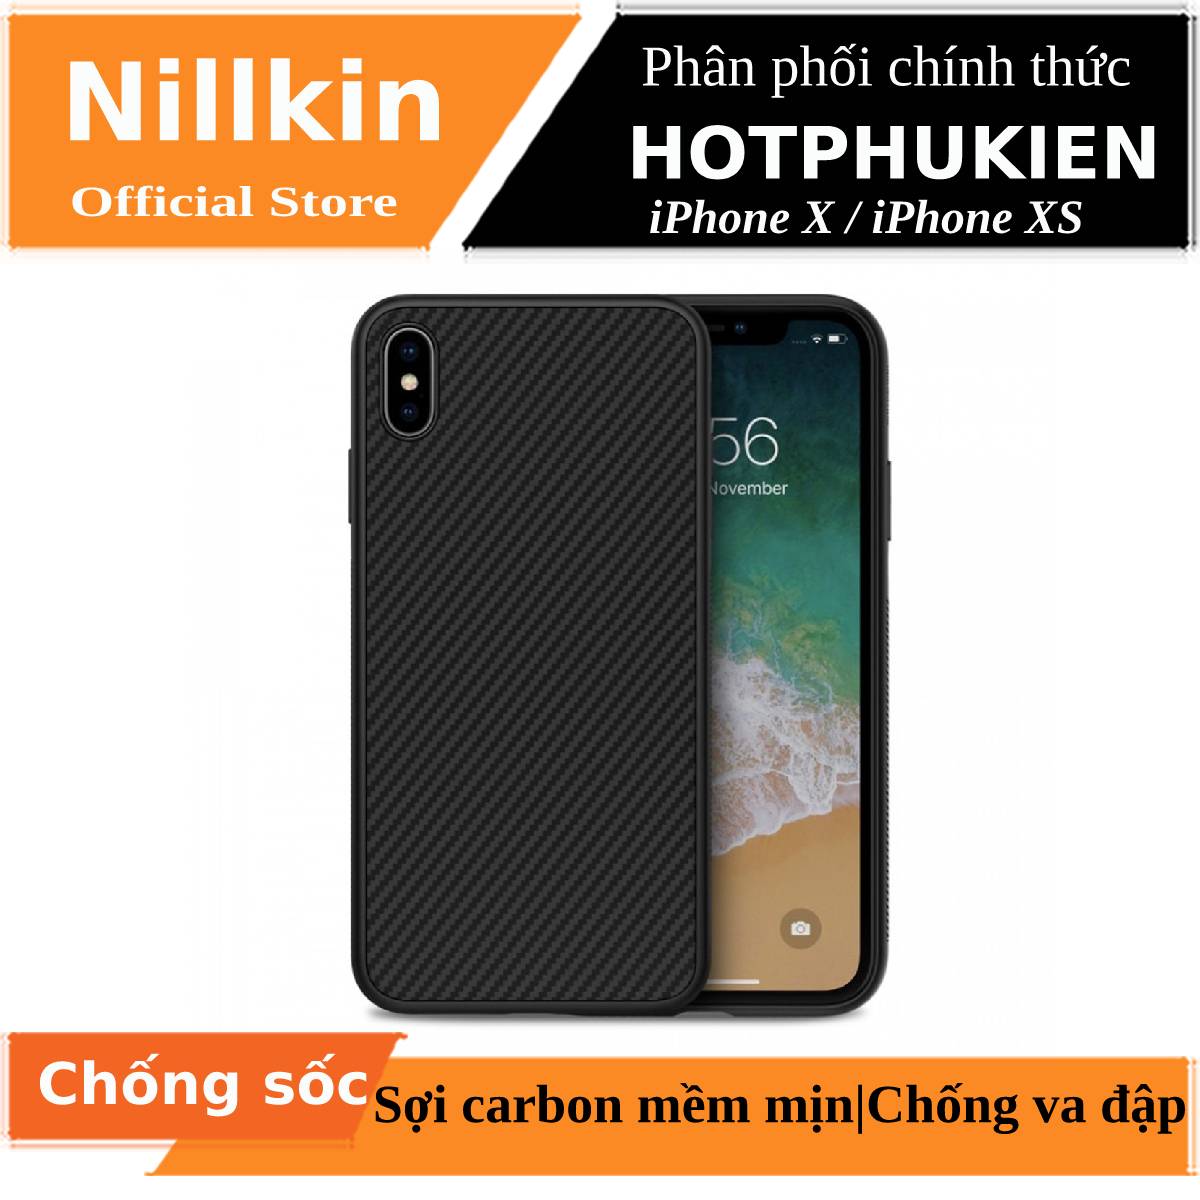 Ốp lưng chống sốc sợi Carbon cho iPhone X / iPhone Xs hiệu Nillkin